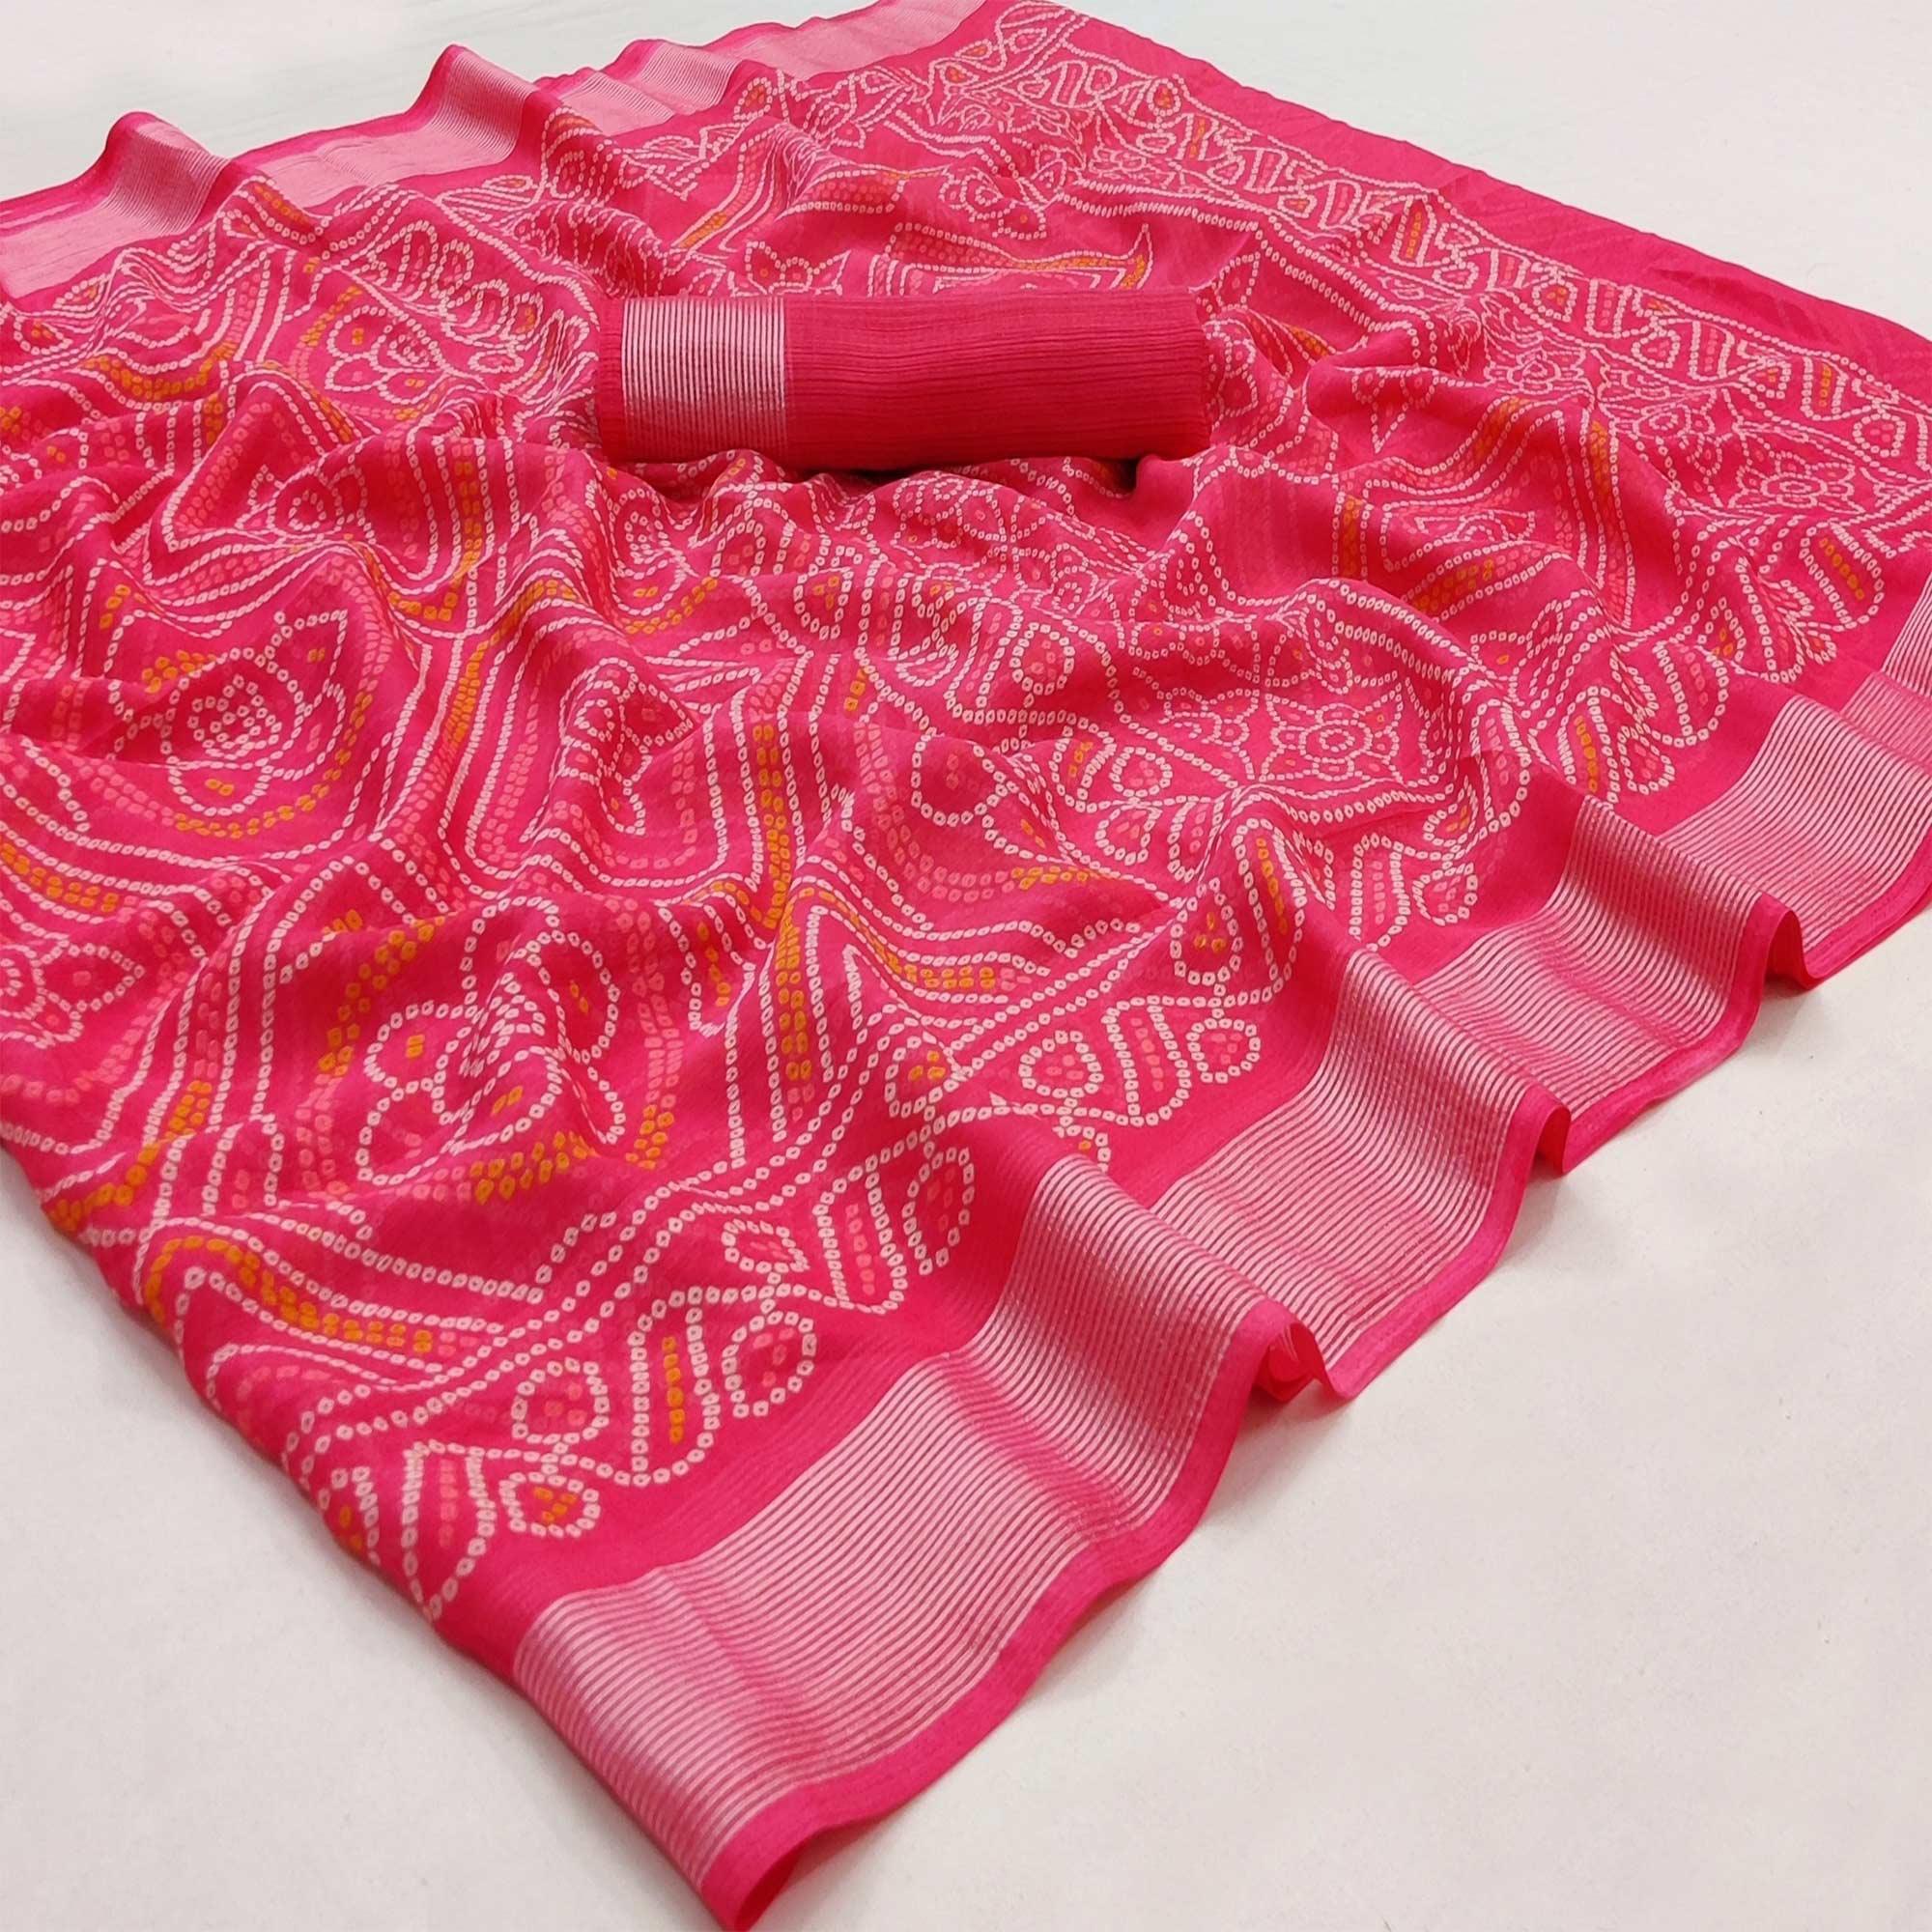 Rani Pink Casual Wear Bandhani Printed Chiffon Saree - Peachmode